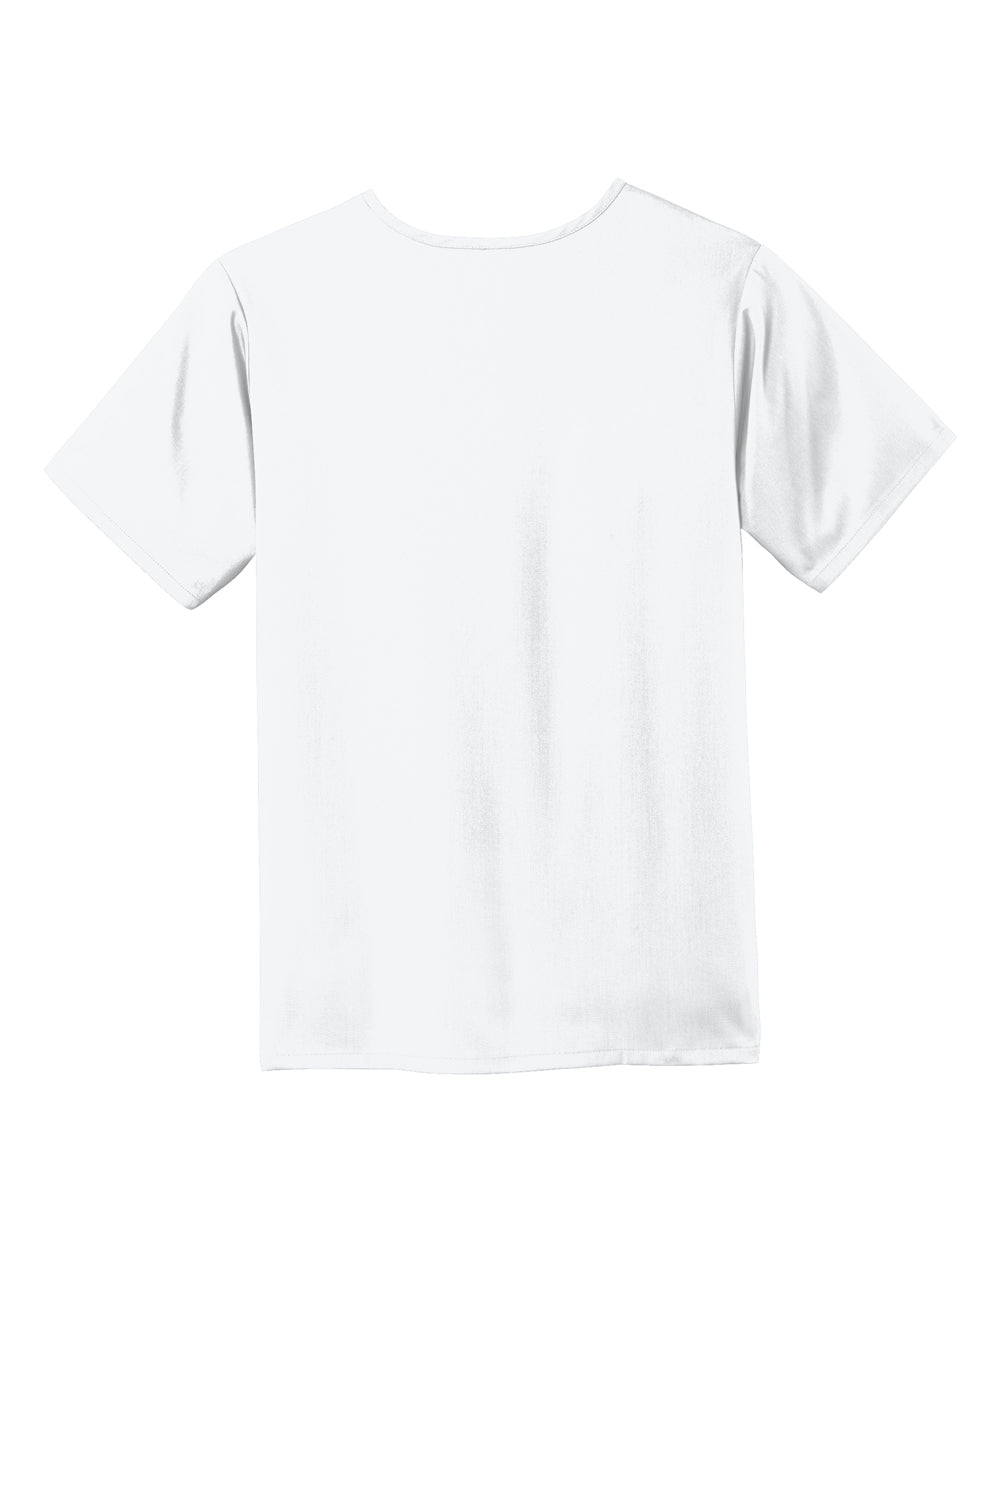 Wonderwink WW5068 Premiere Flex Short Sleeve V-Neck Shirt White Flat Back